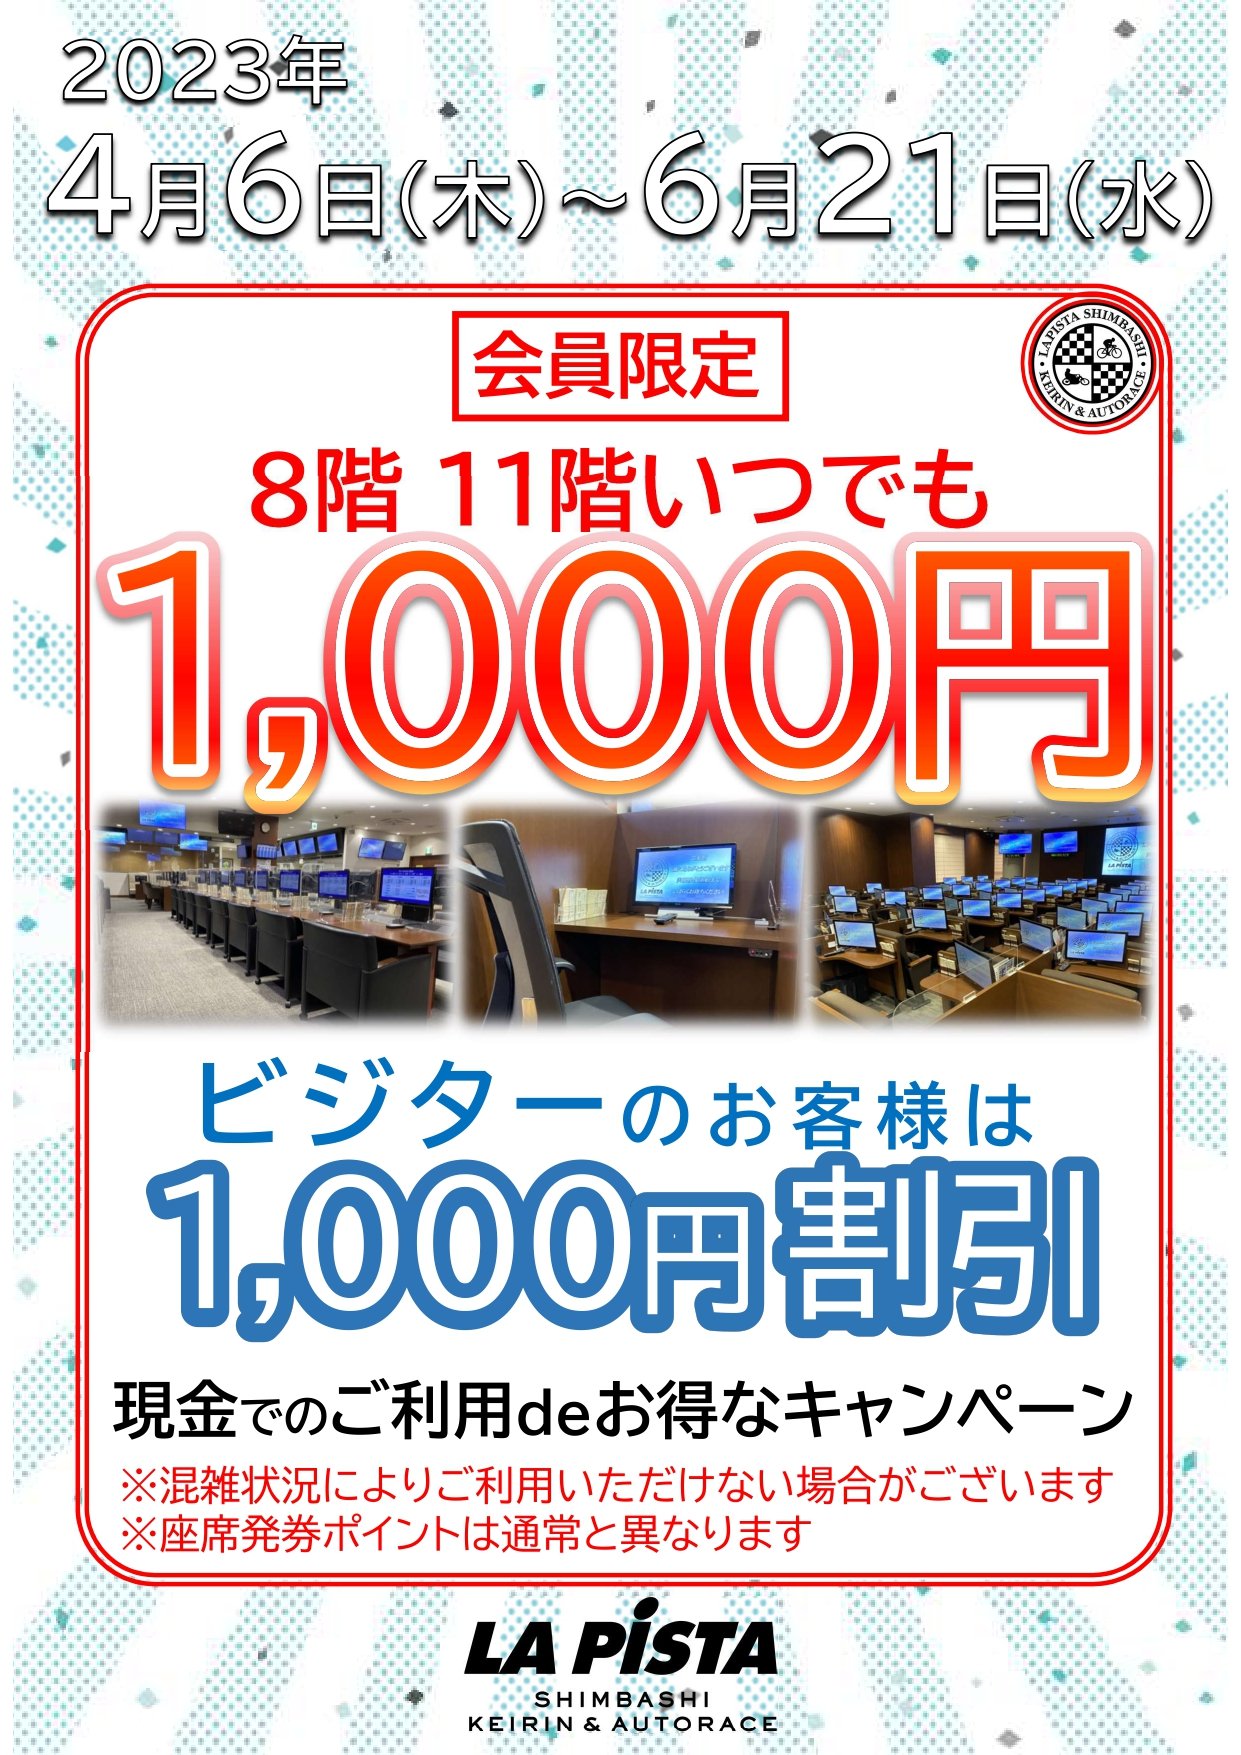 1000円キャンペーンポスター_page-0001.jpg